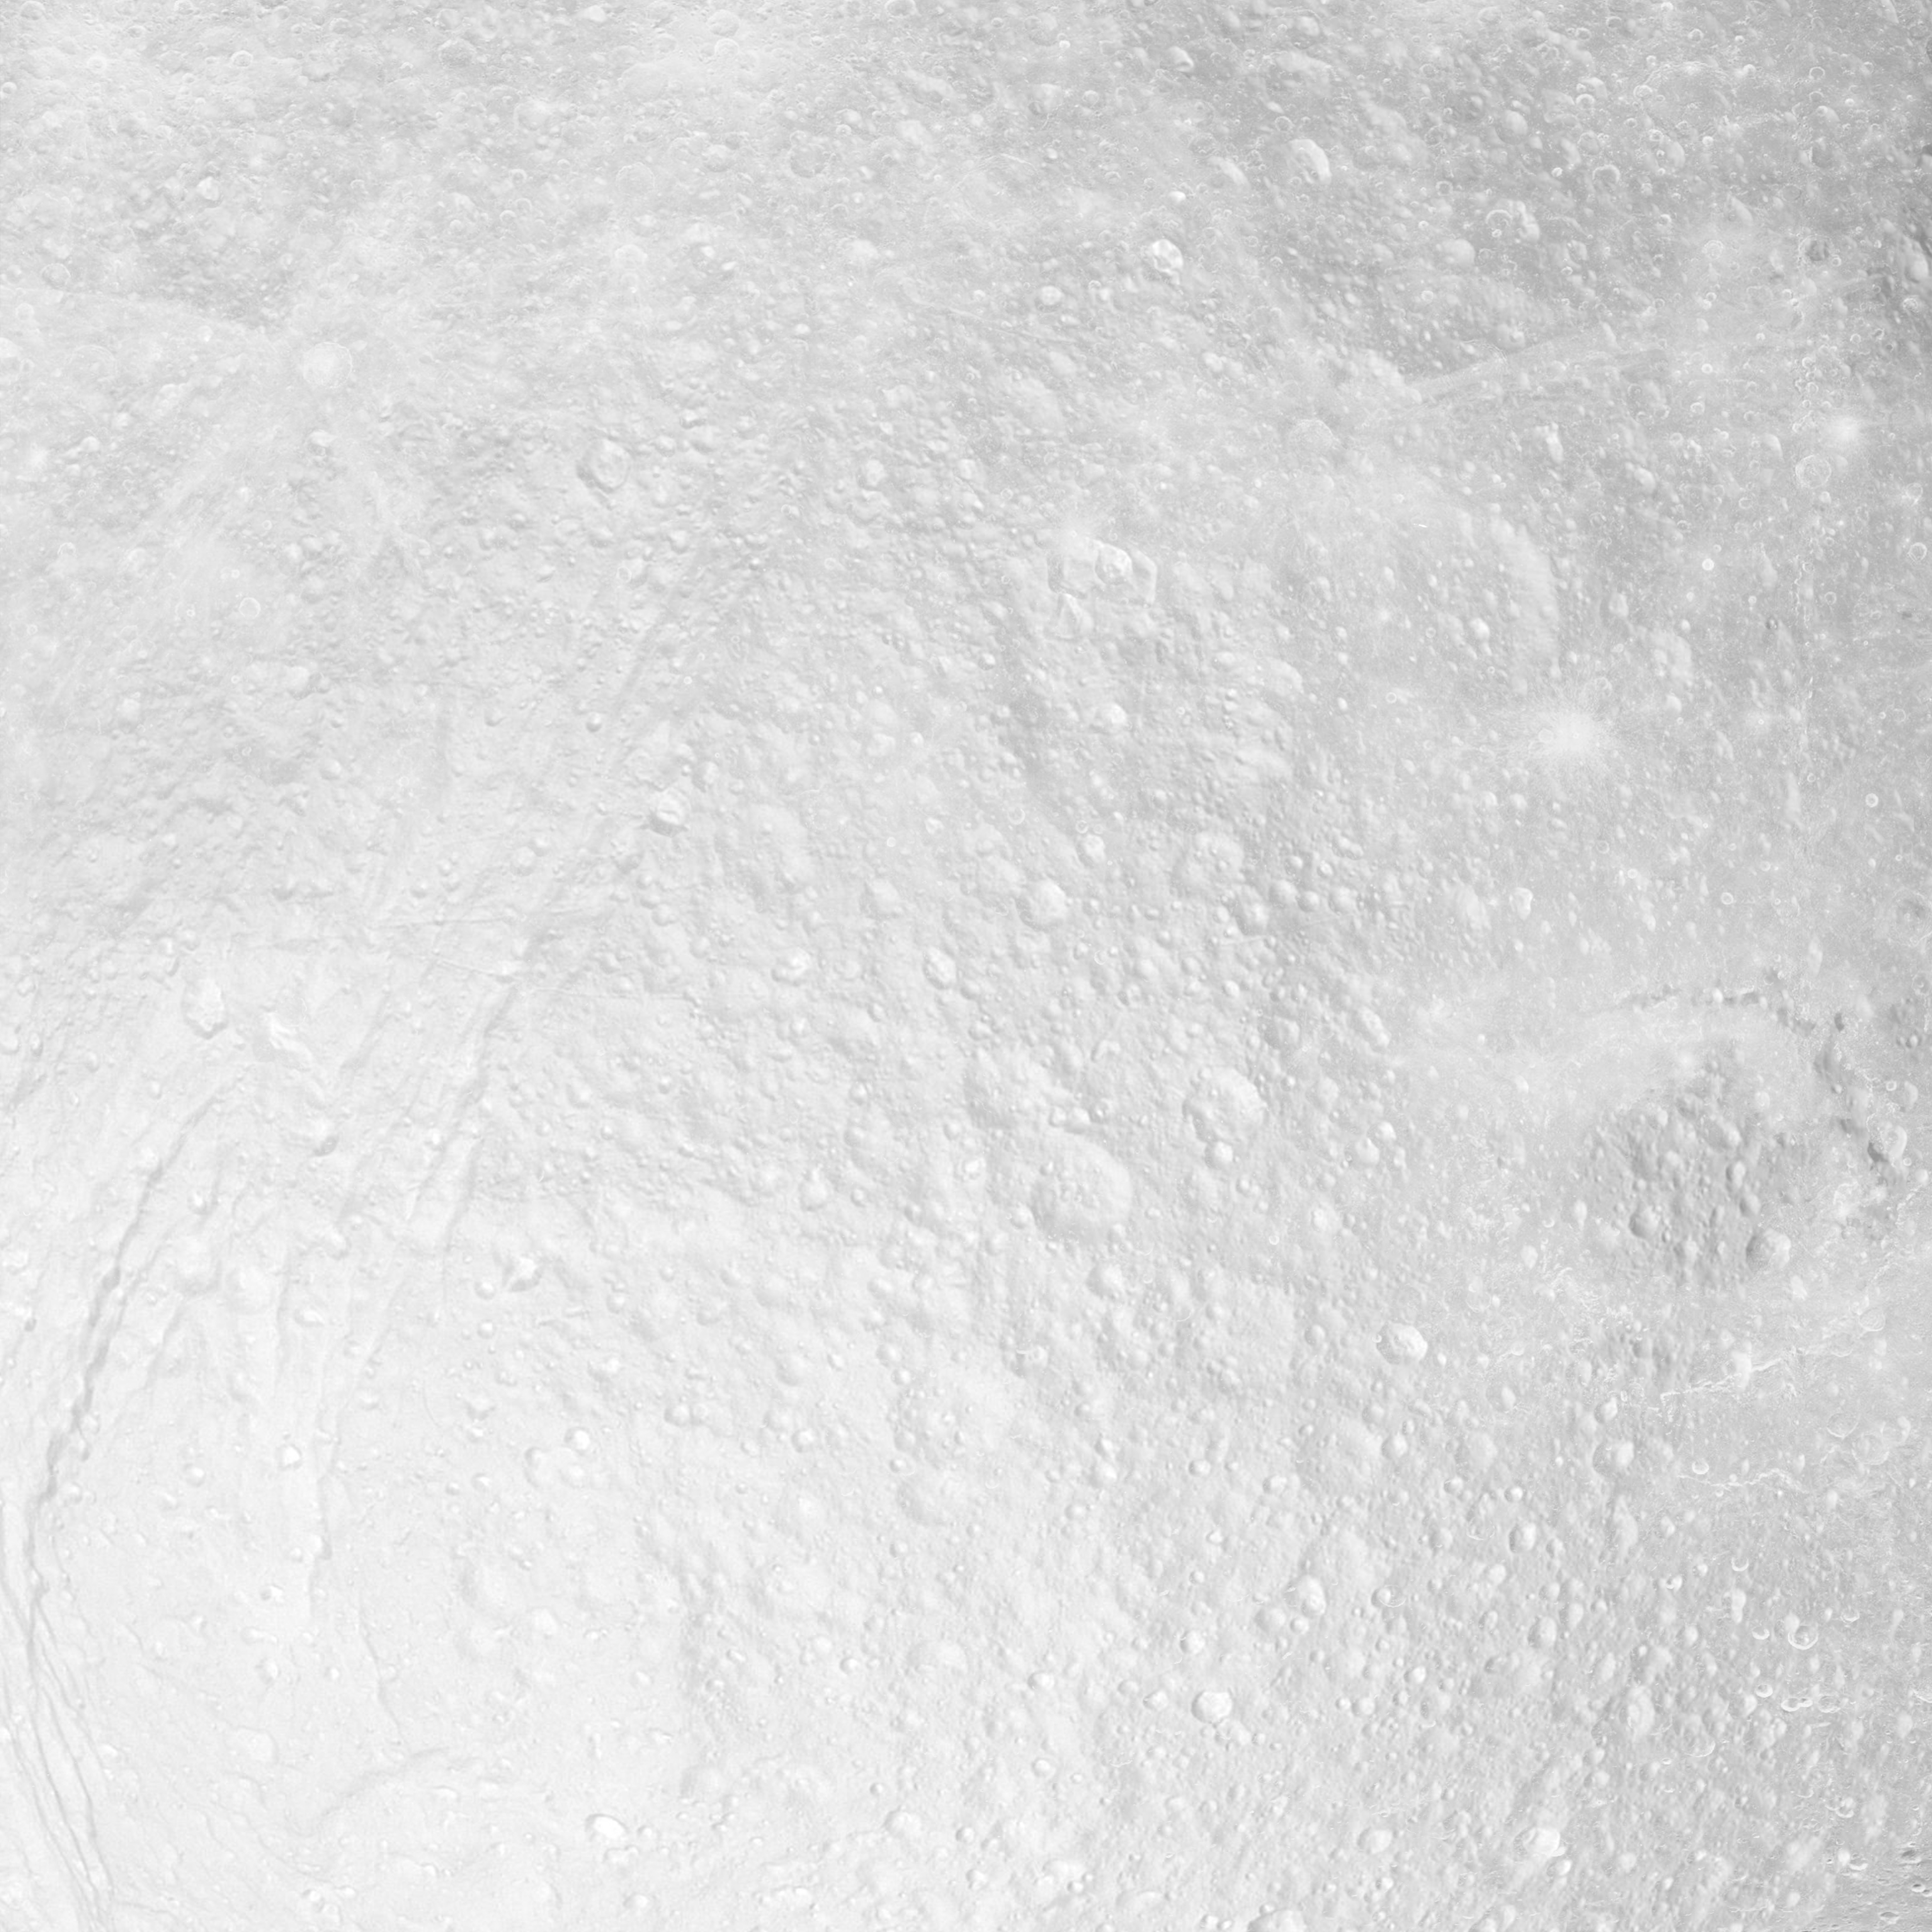 Ice moon texture by Arminius1871 on DeviantArt